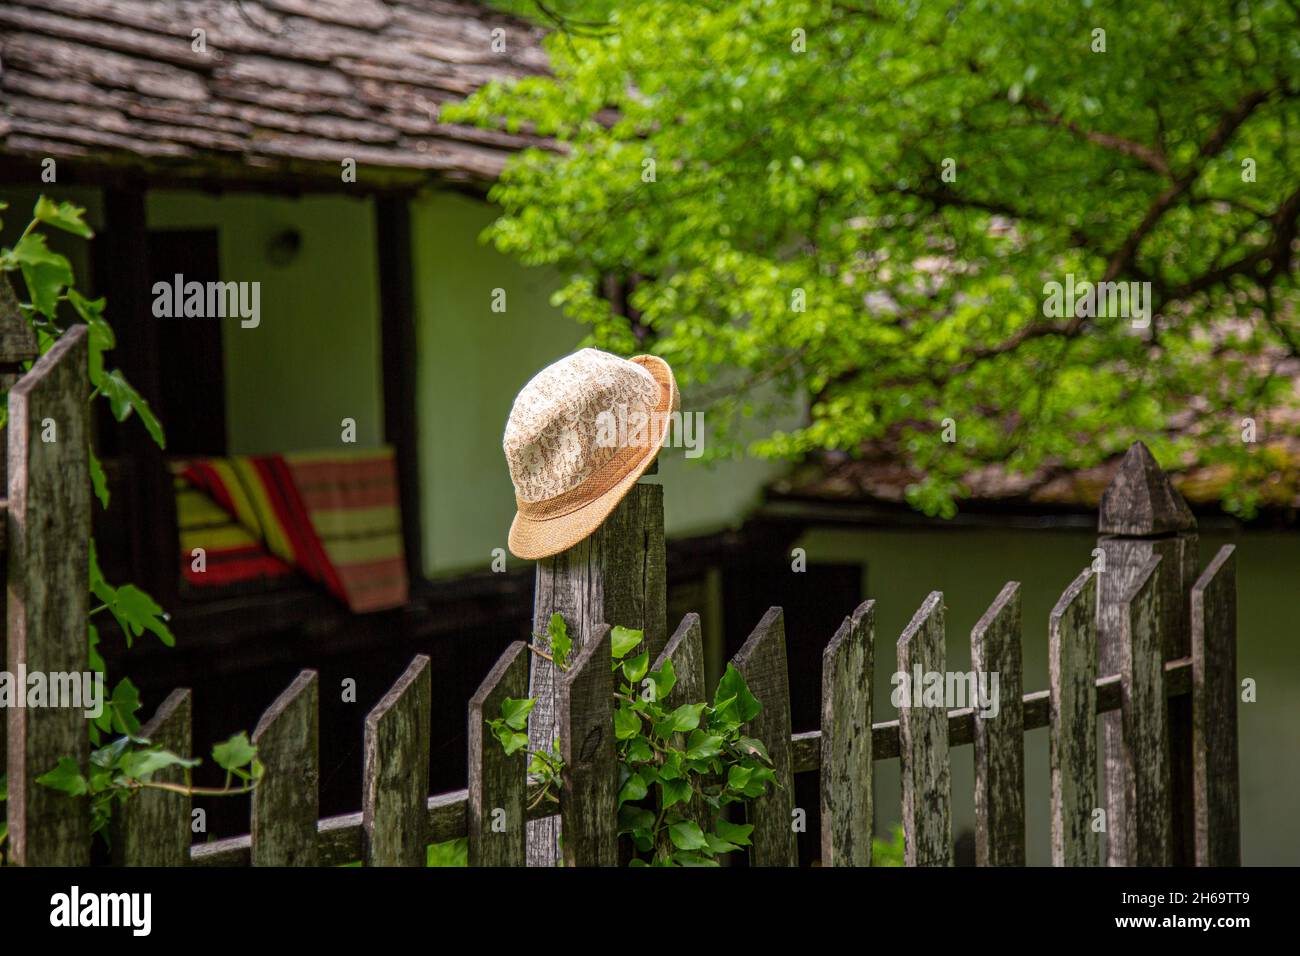 Un chapeau de femme jaune de paille reposant sur un poste de clôture avec des terres agricoles à l'arrière-plan dans le village bulgare. Banque D'Images